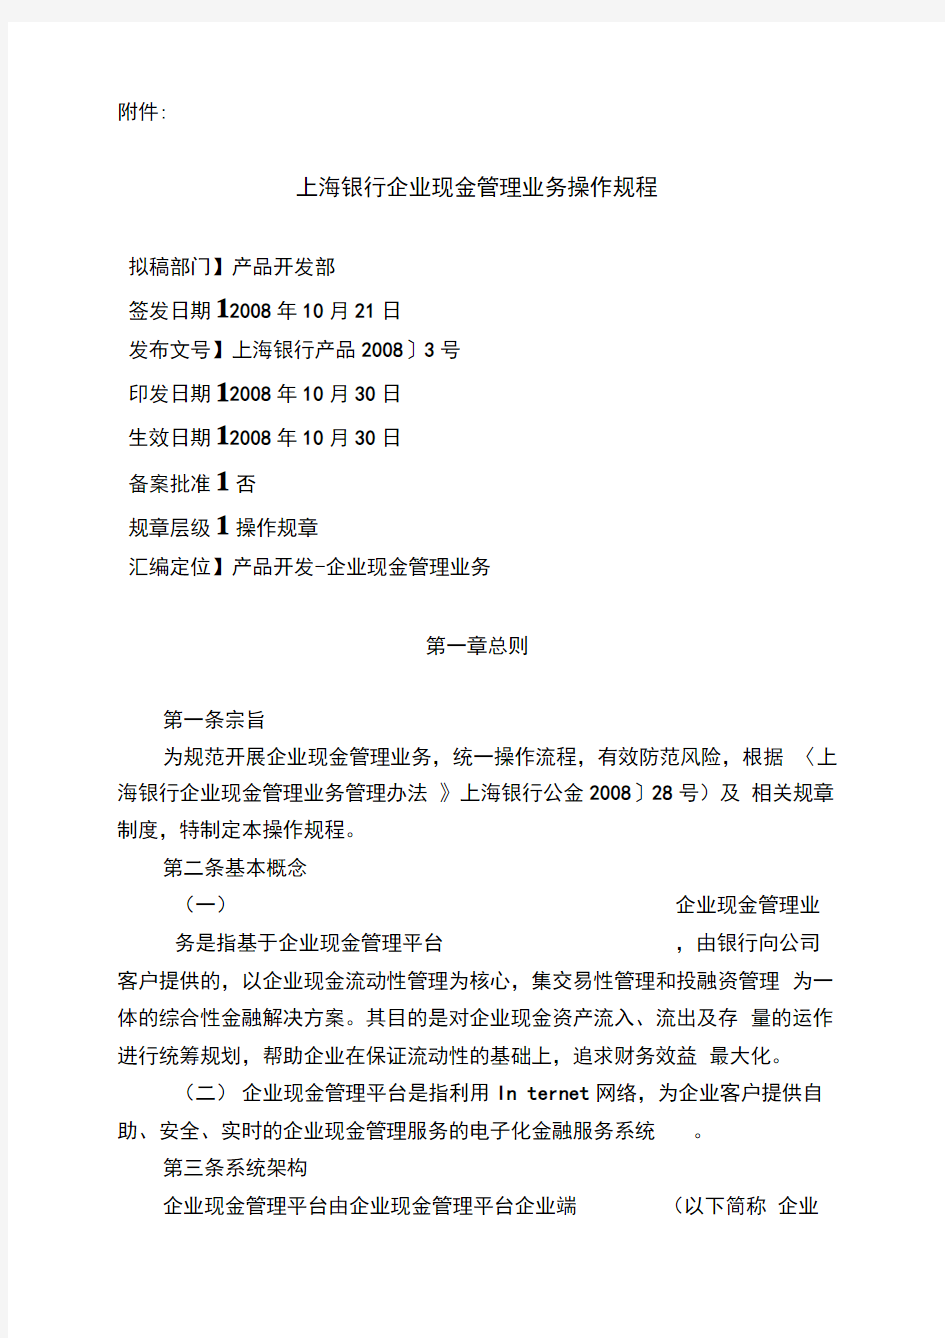 上海银行企业现金管理业务操作规程完整